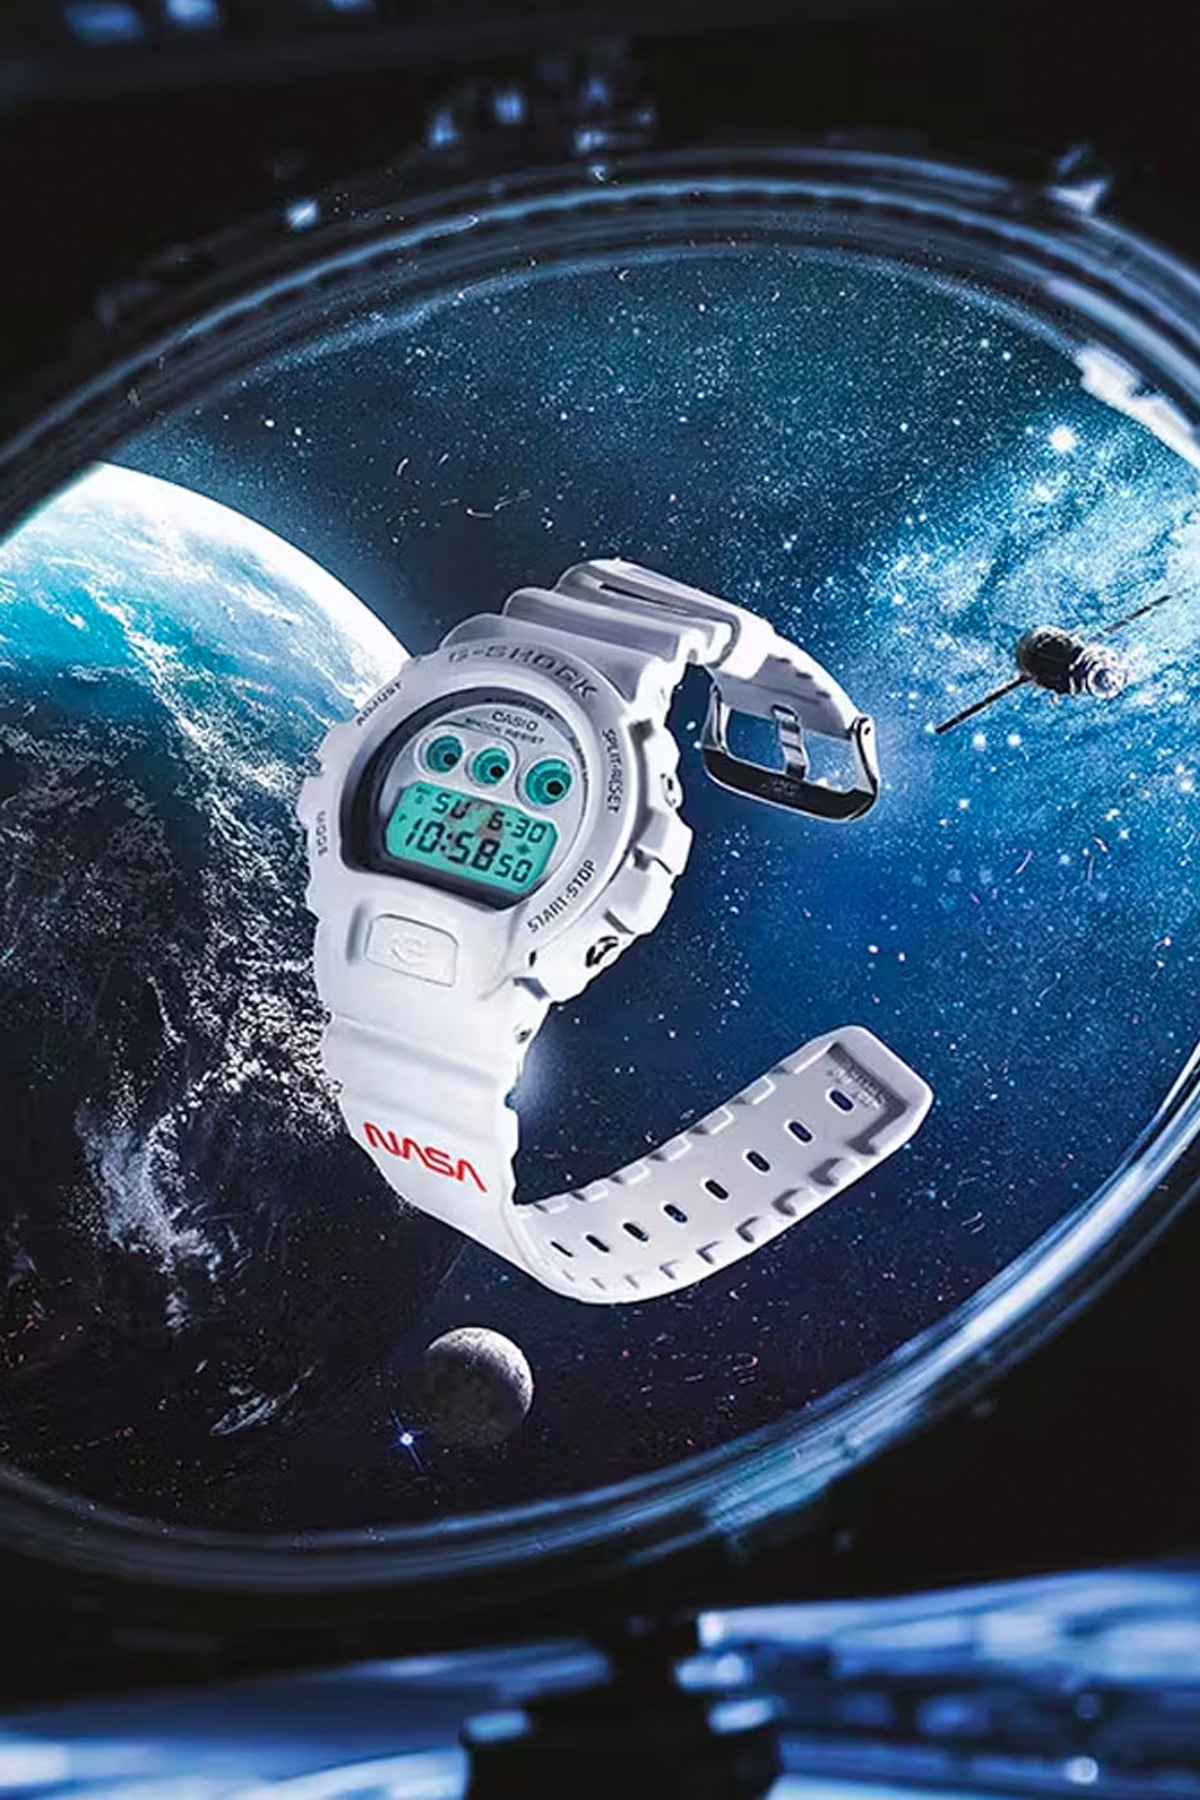 NASA x G-Shock DW-6900 全新聯名錶款正式發佈